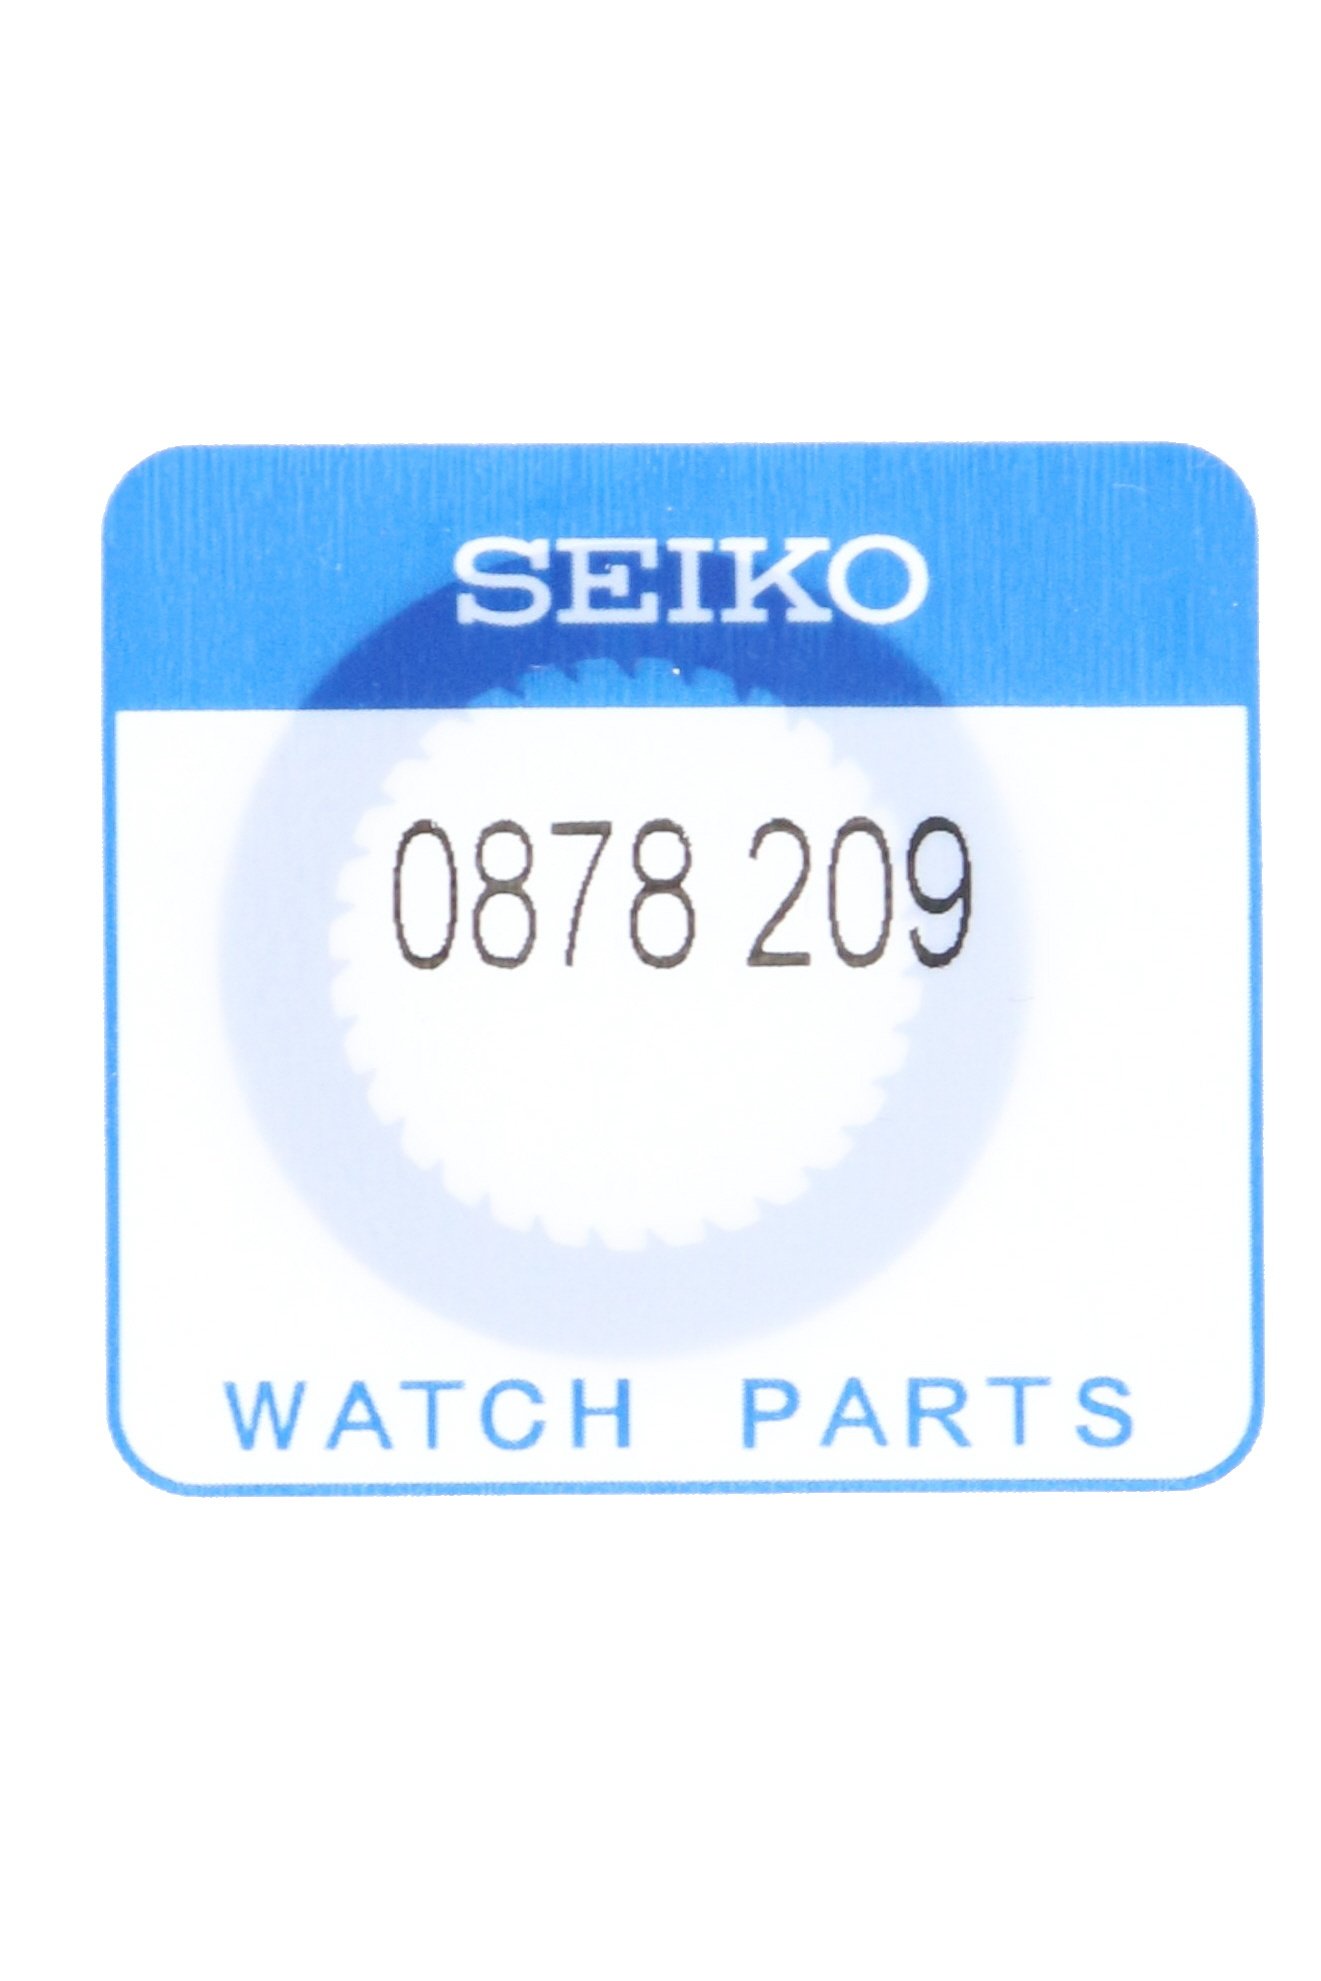 Seiko 0878209 Date-Disc 4R15, 4R35, 4R37, 6R15 & 6R35 - WatchPlaza